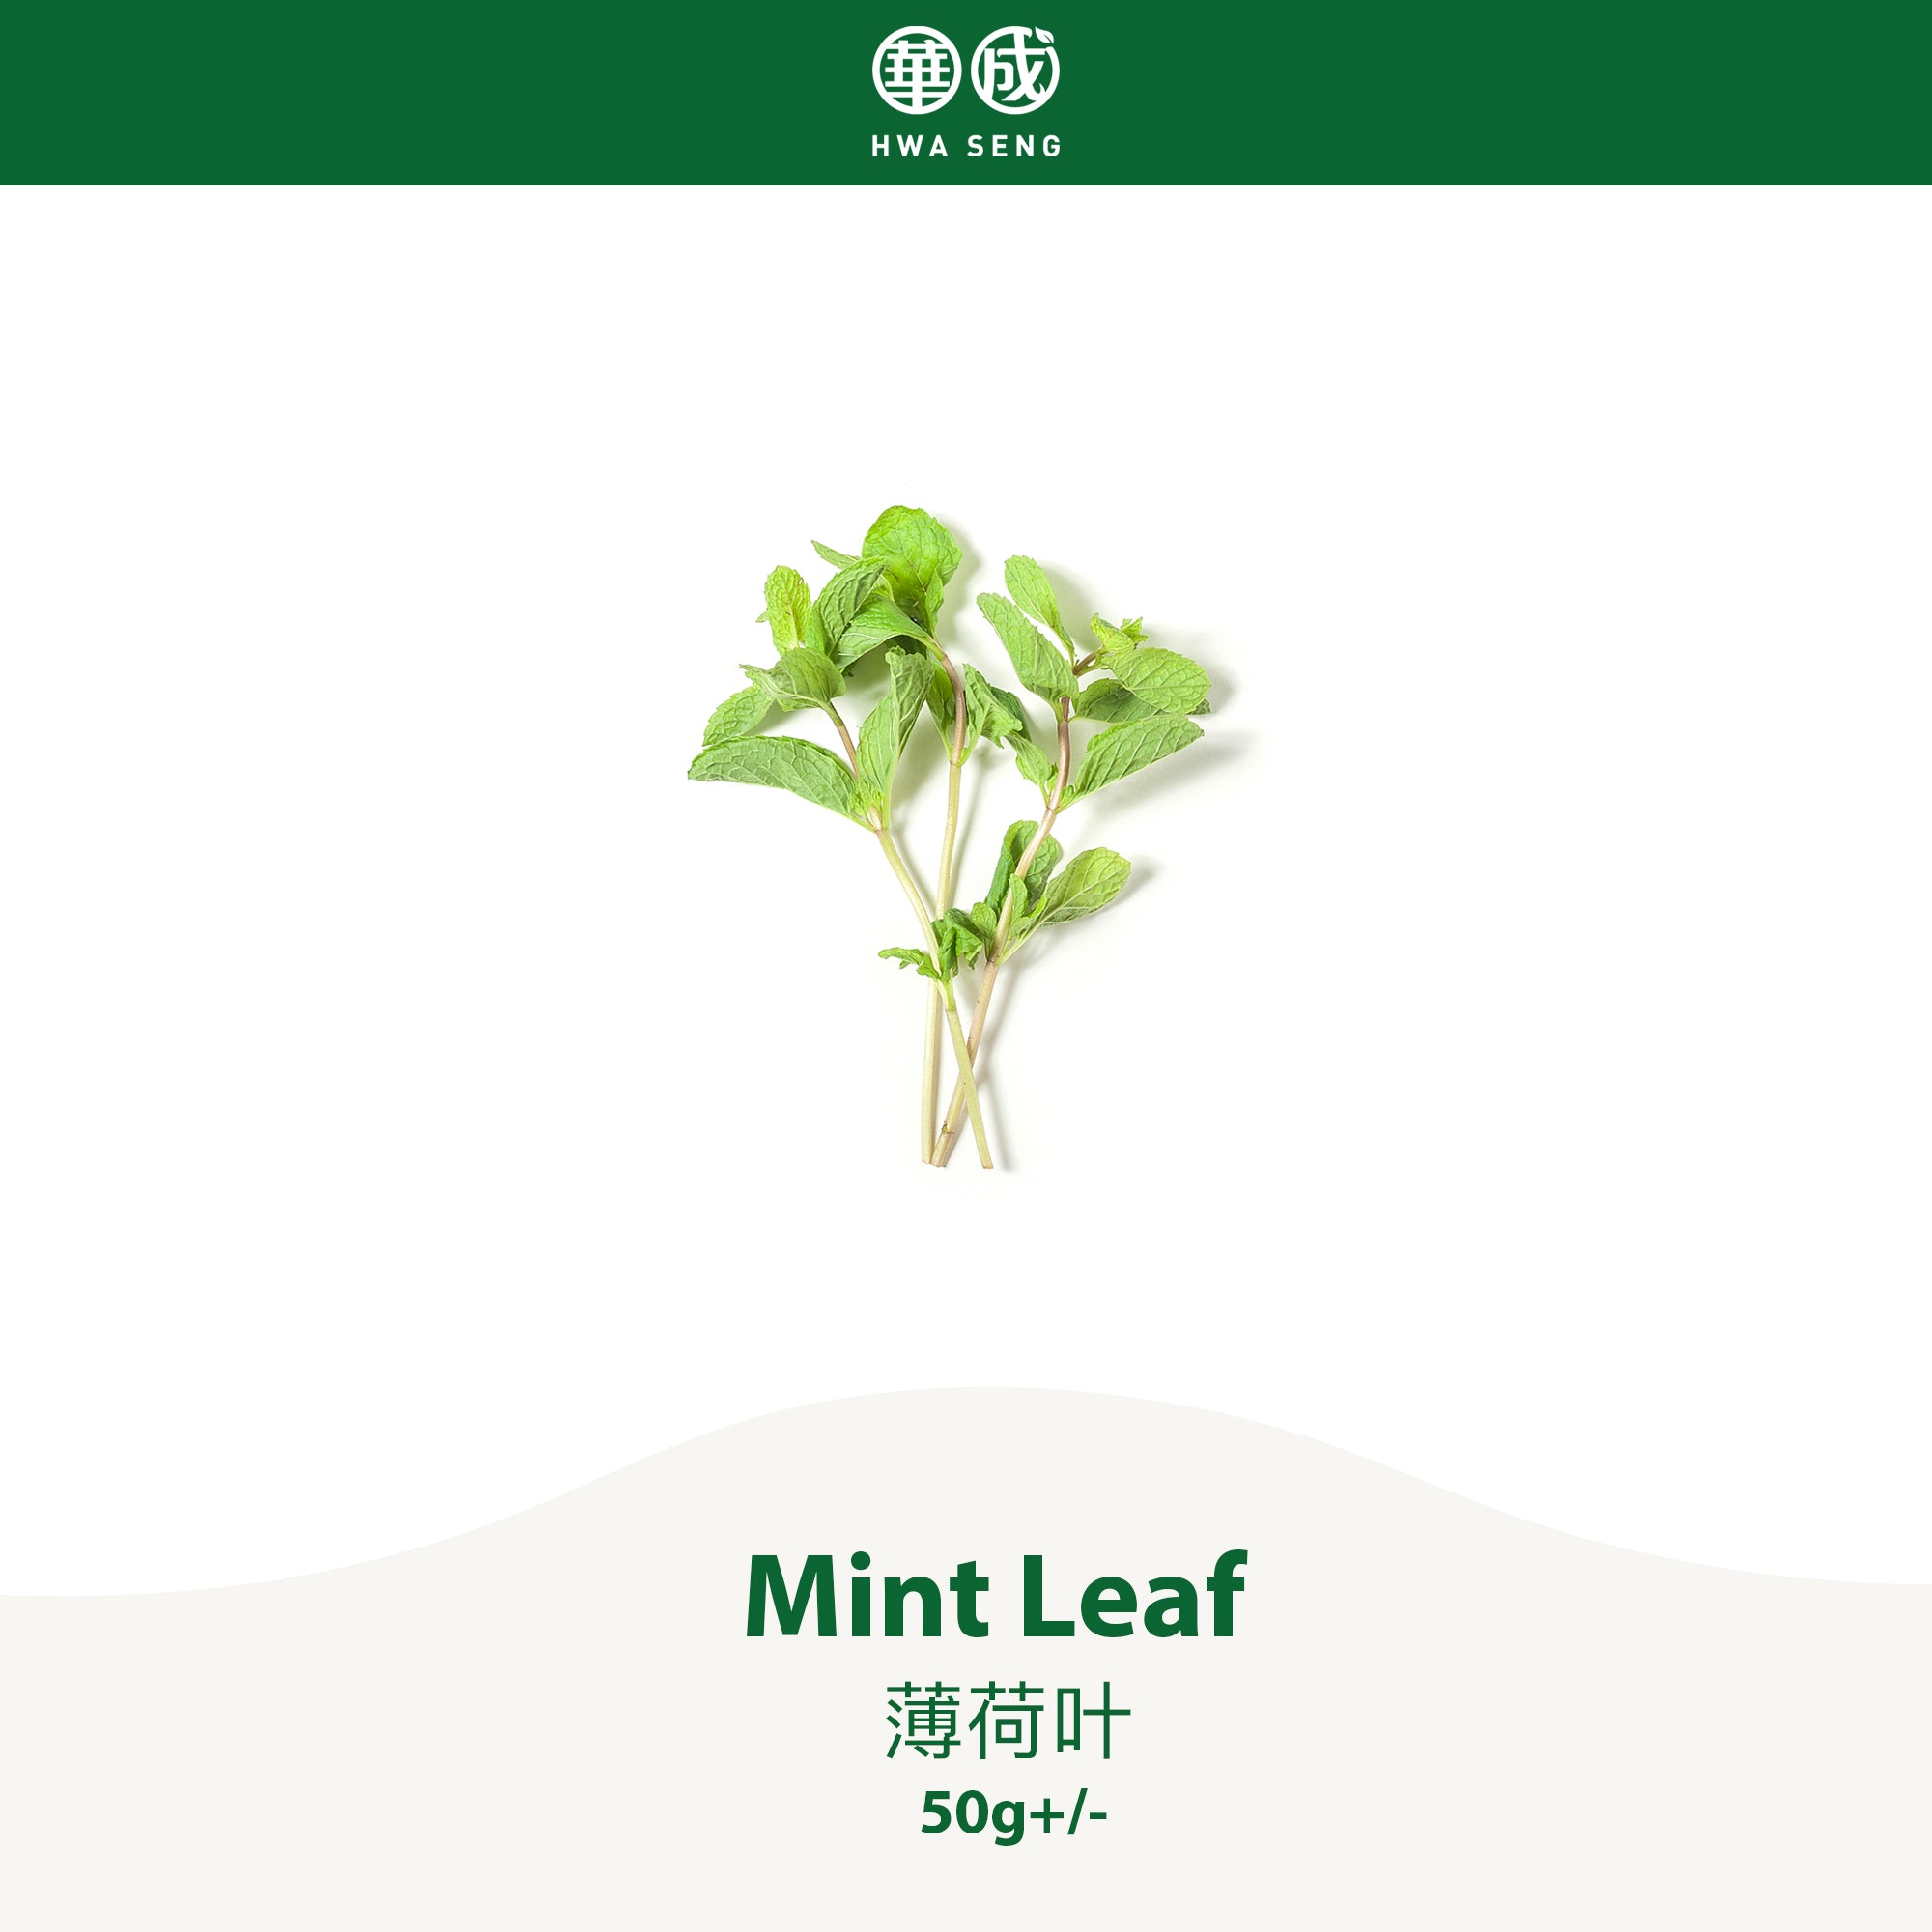 Mint Leaf 薄荷叶 50g+/-